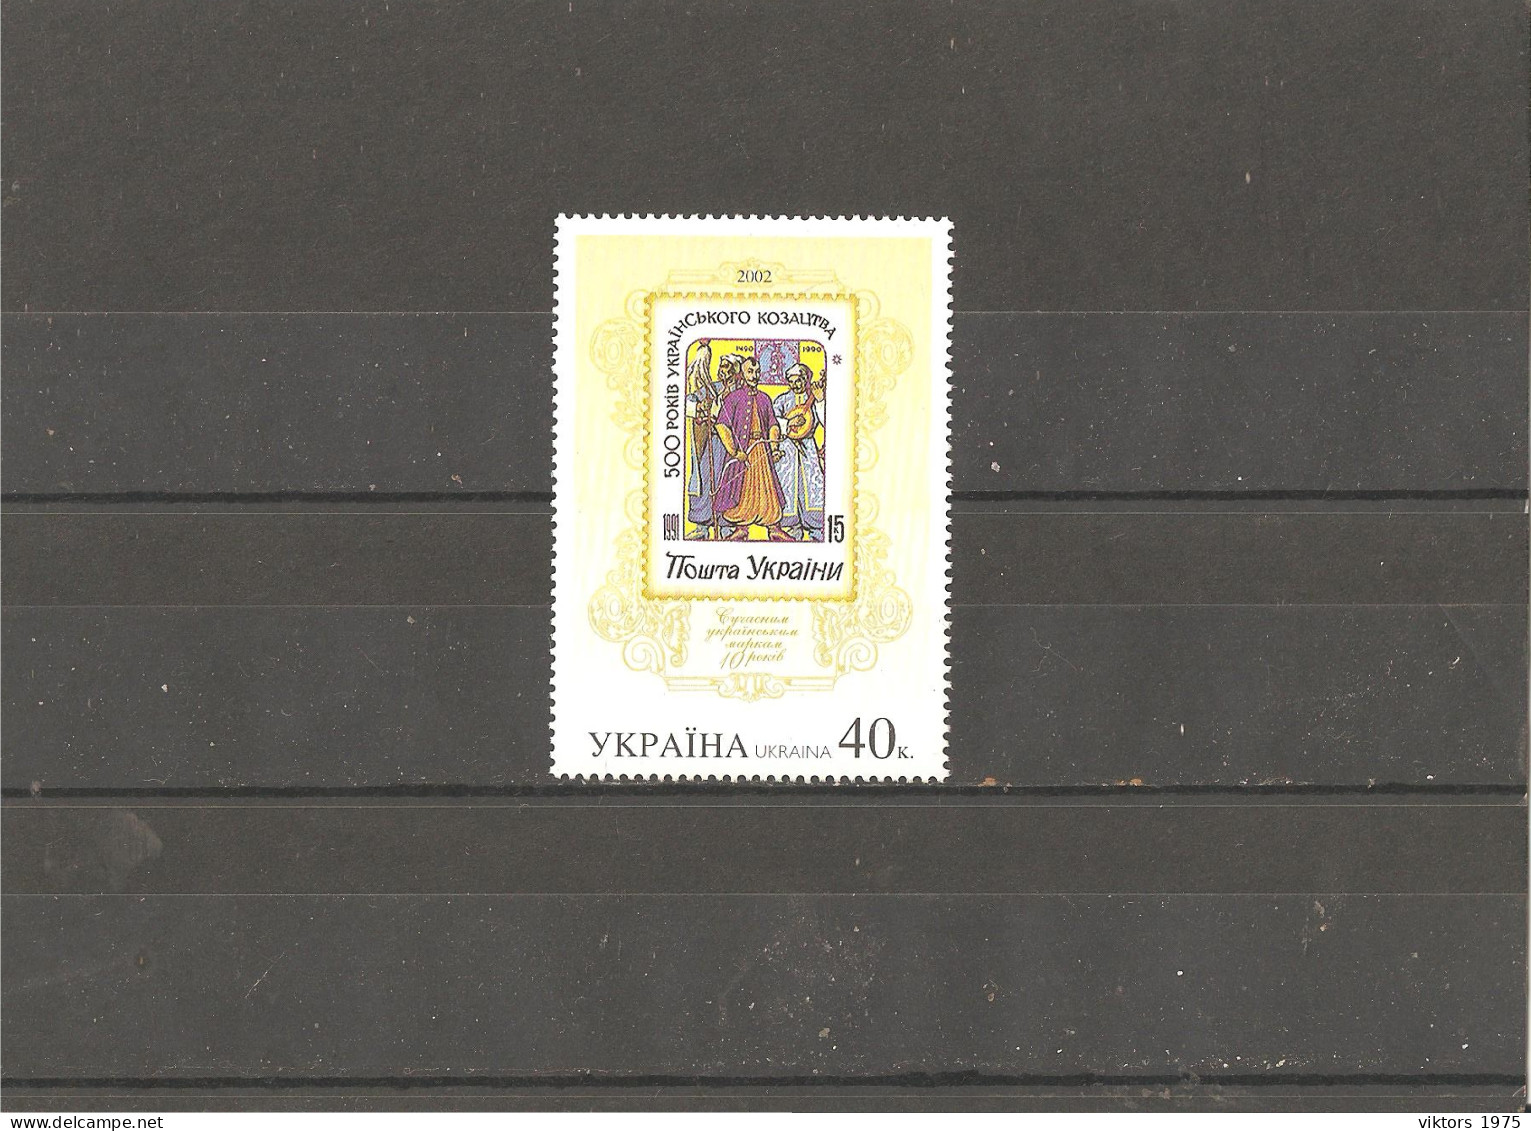 MNH Stamp Nr.496 In MICHEL Catalog - Ukraine